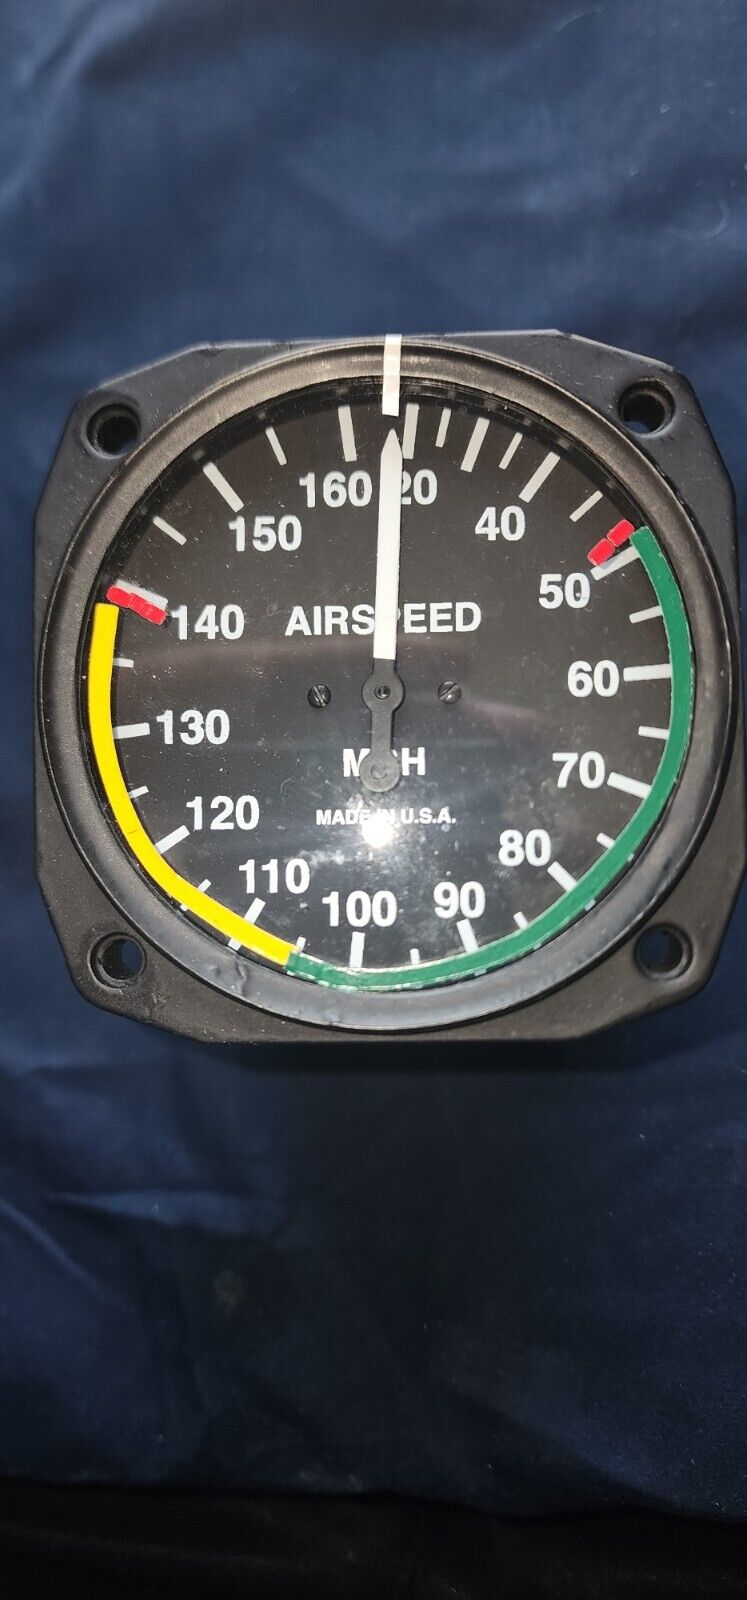 Uma Airspeed Indicator T16-310-161. SHIPS FREE